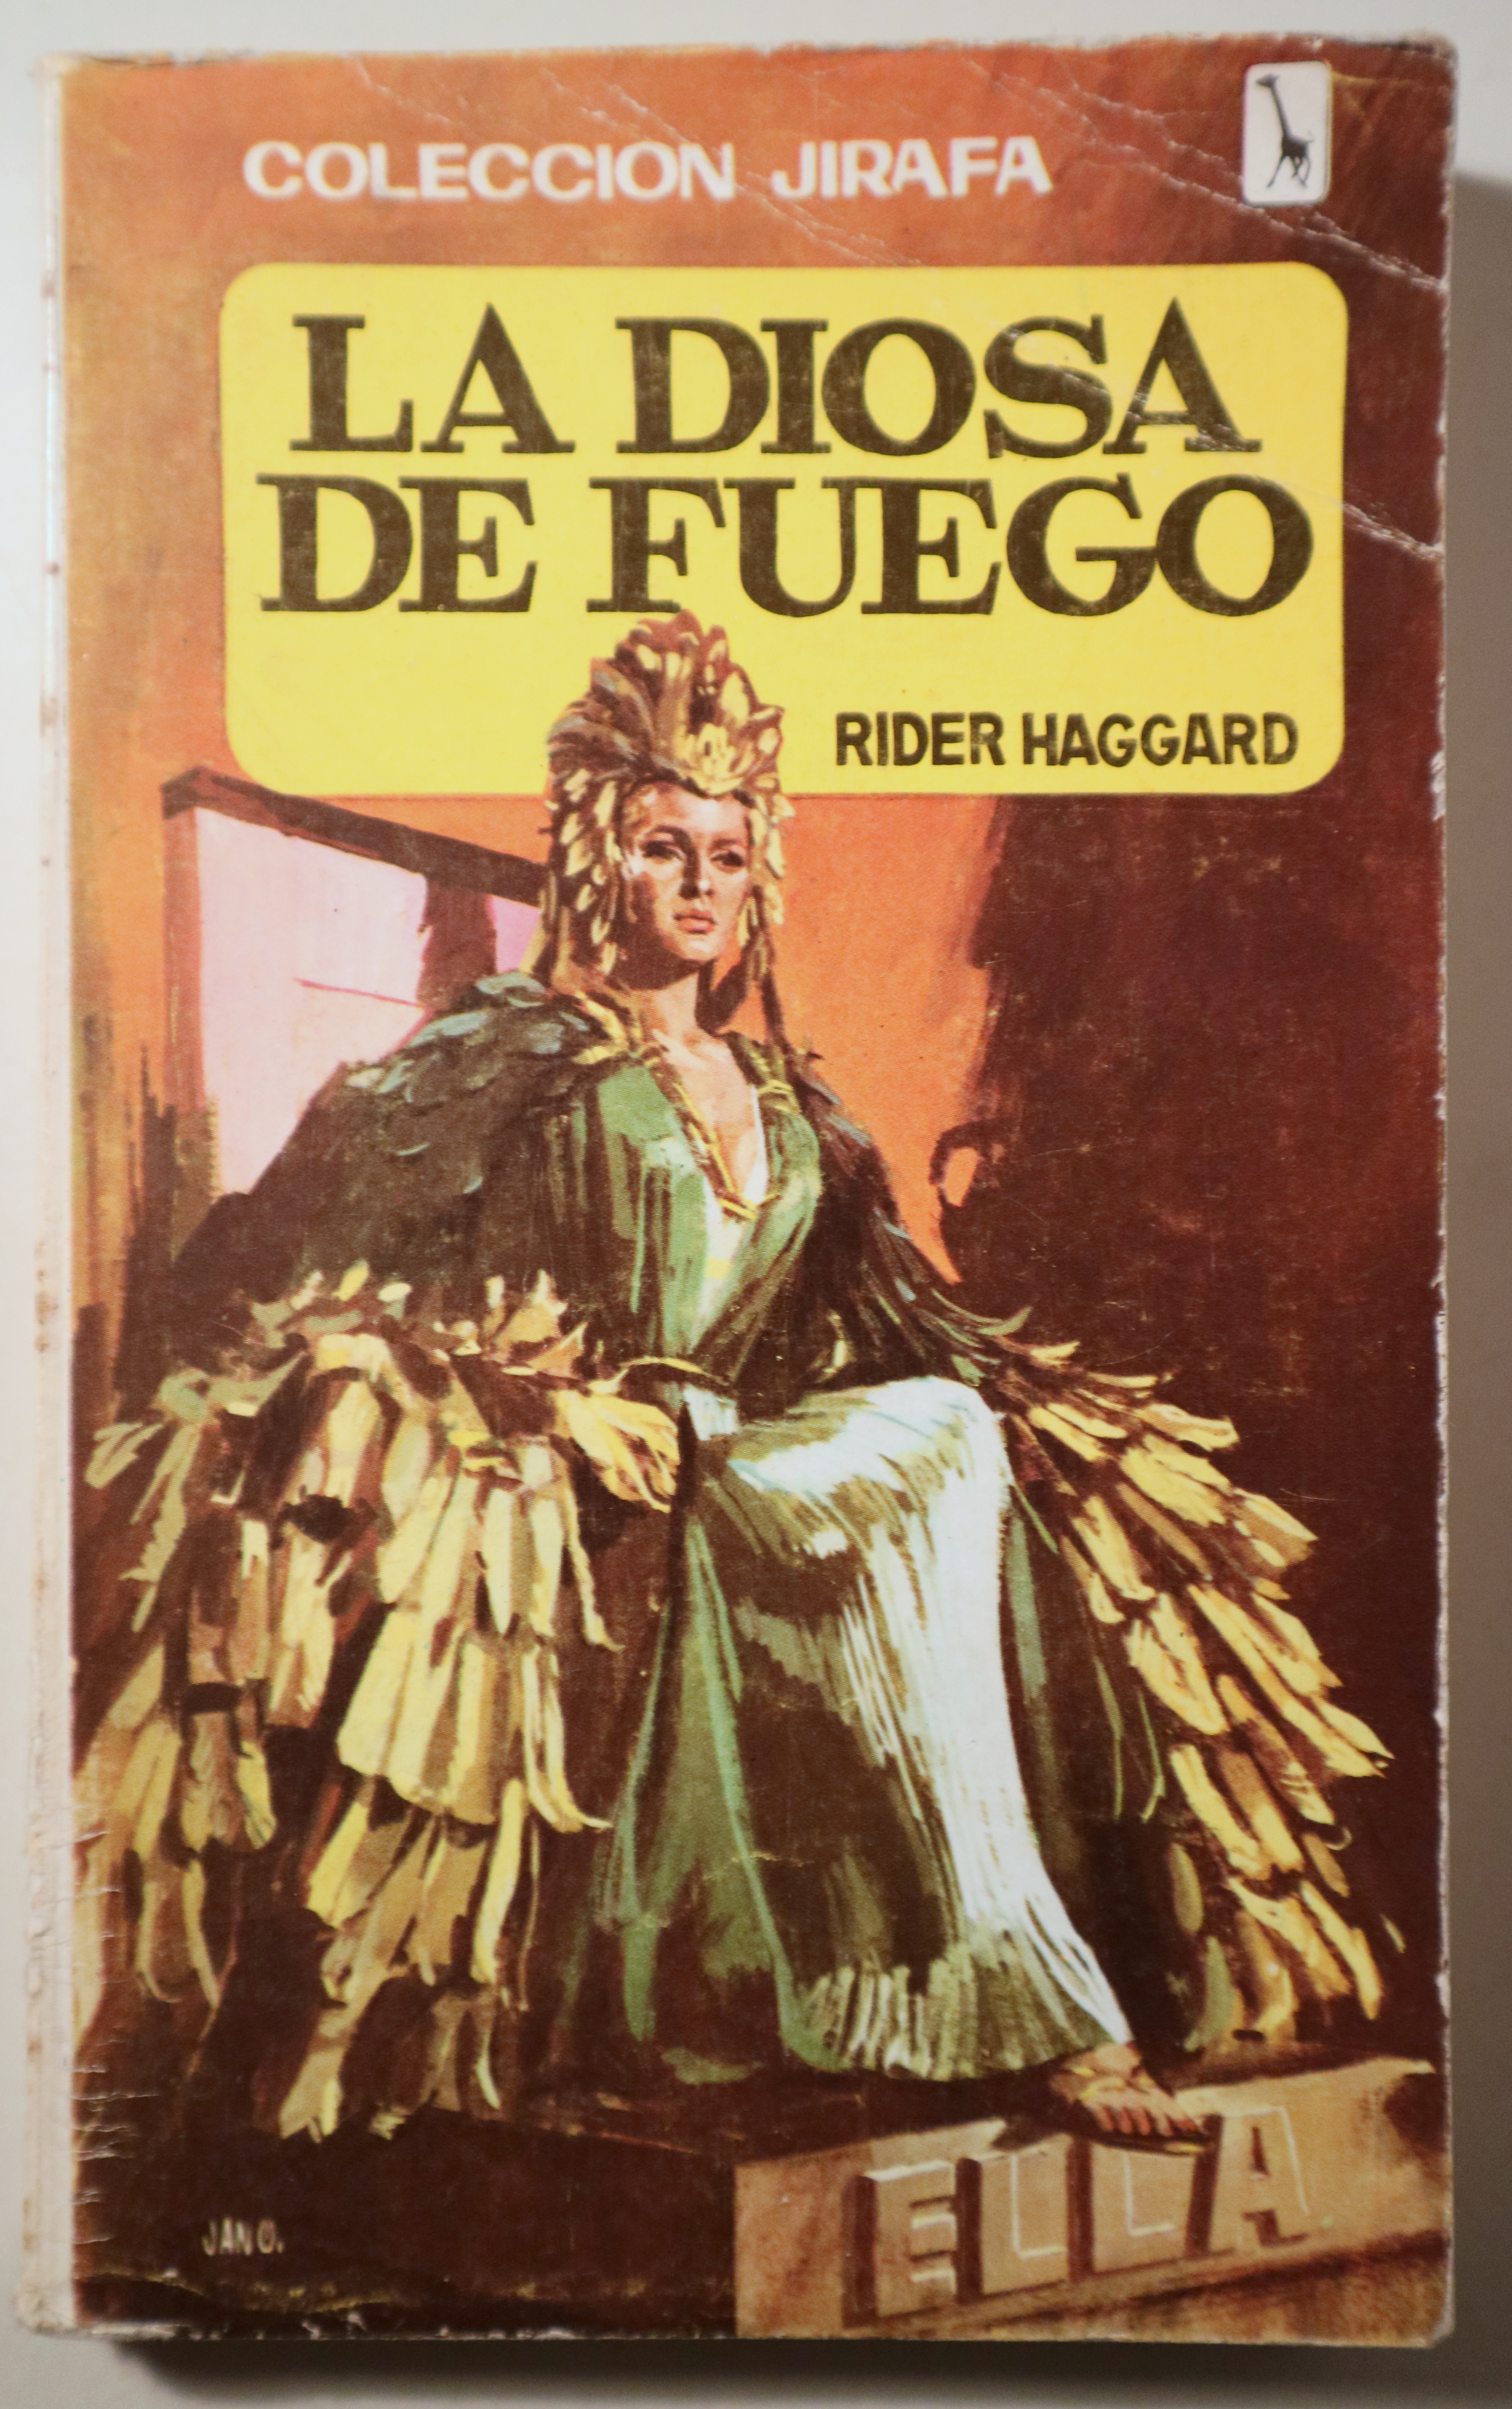 LA DIOSA DE FUEGO (ella) - Madrid 1967